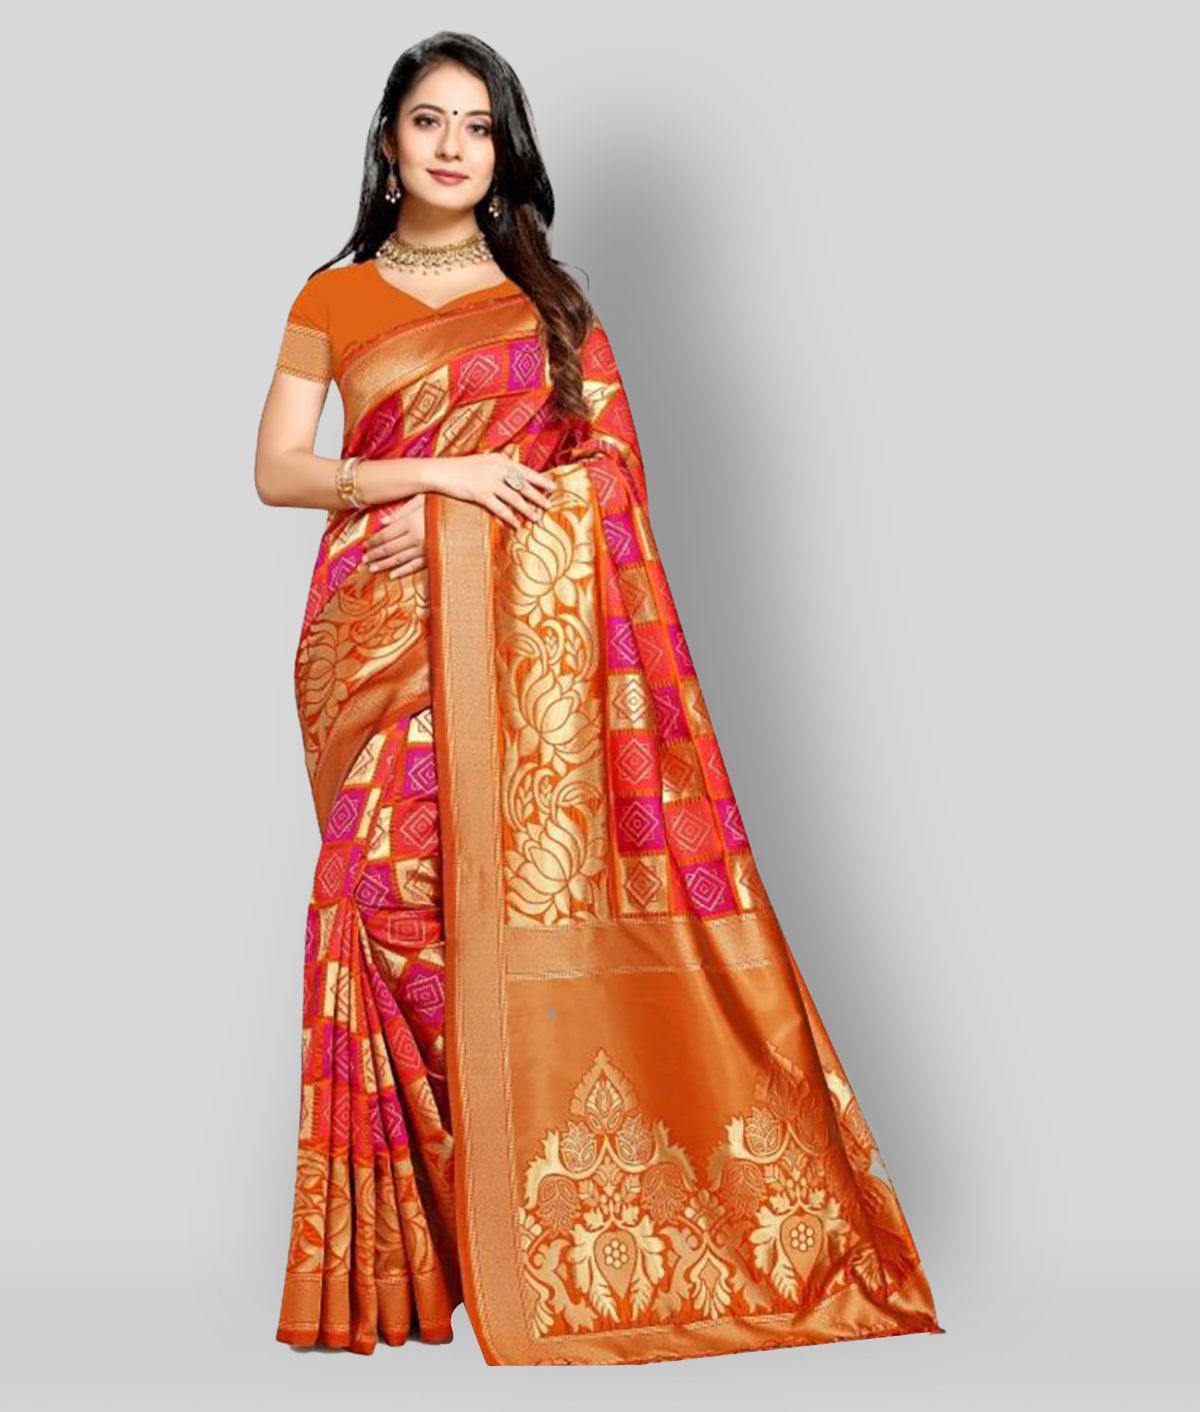 NENCY FASHION - Orange Banarasi Silk Saree With Blouse Piece ( Pack of 1 )